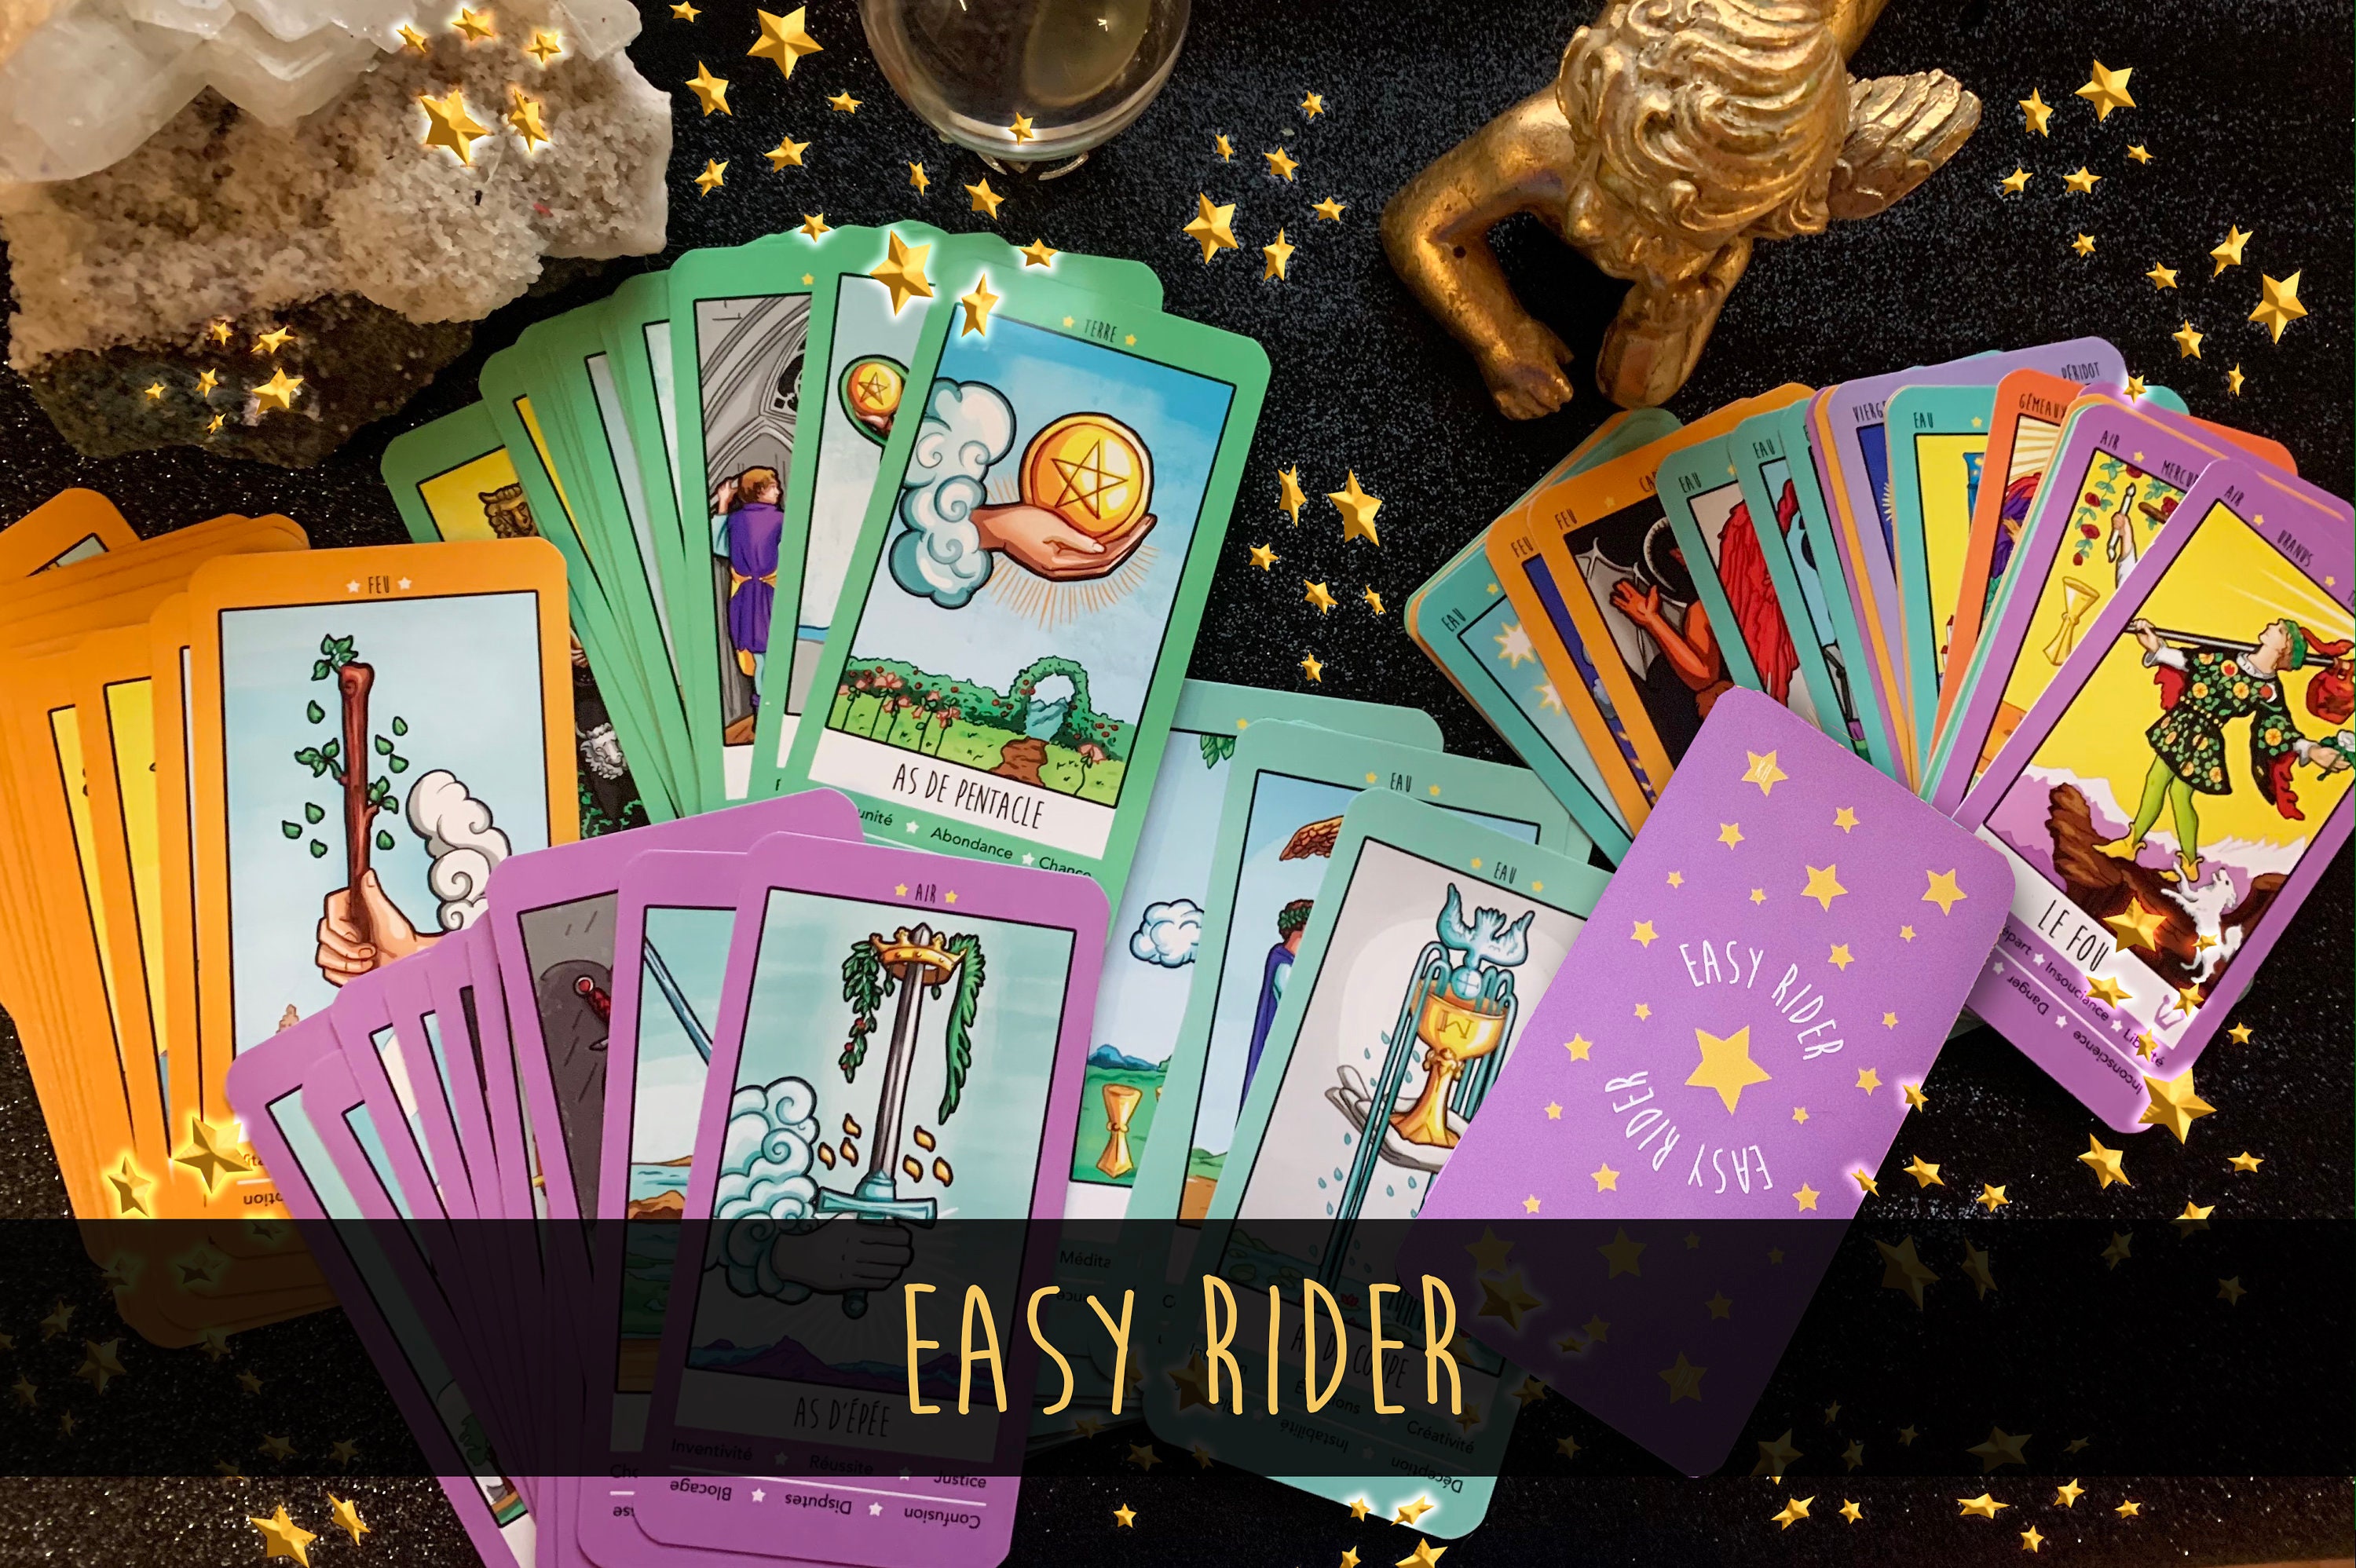 Tarot Rider Waite,Tarot Cards,Jeu de Tarot divinatoire,Tarot